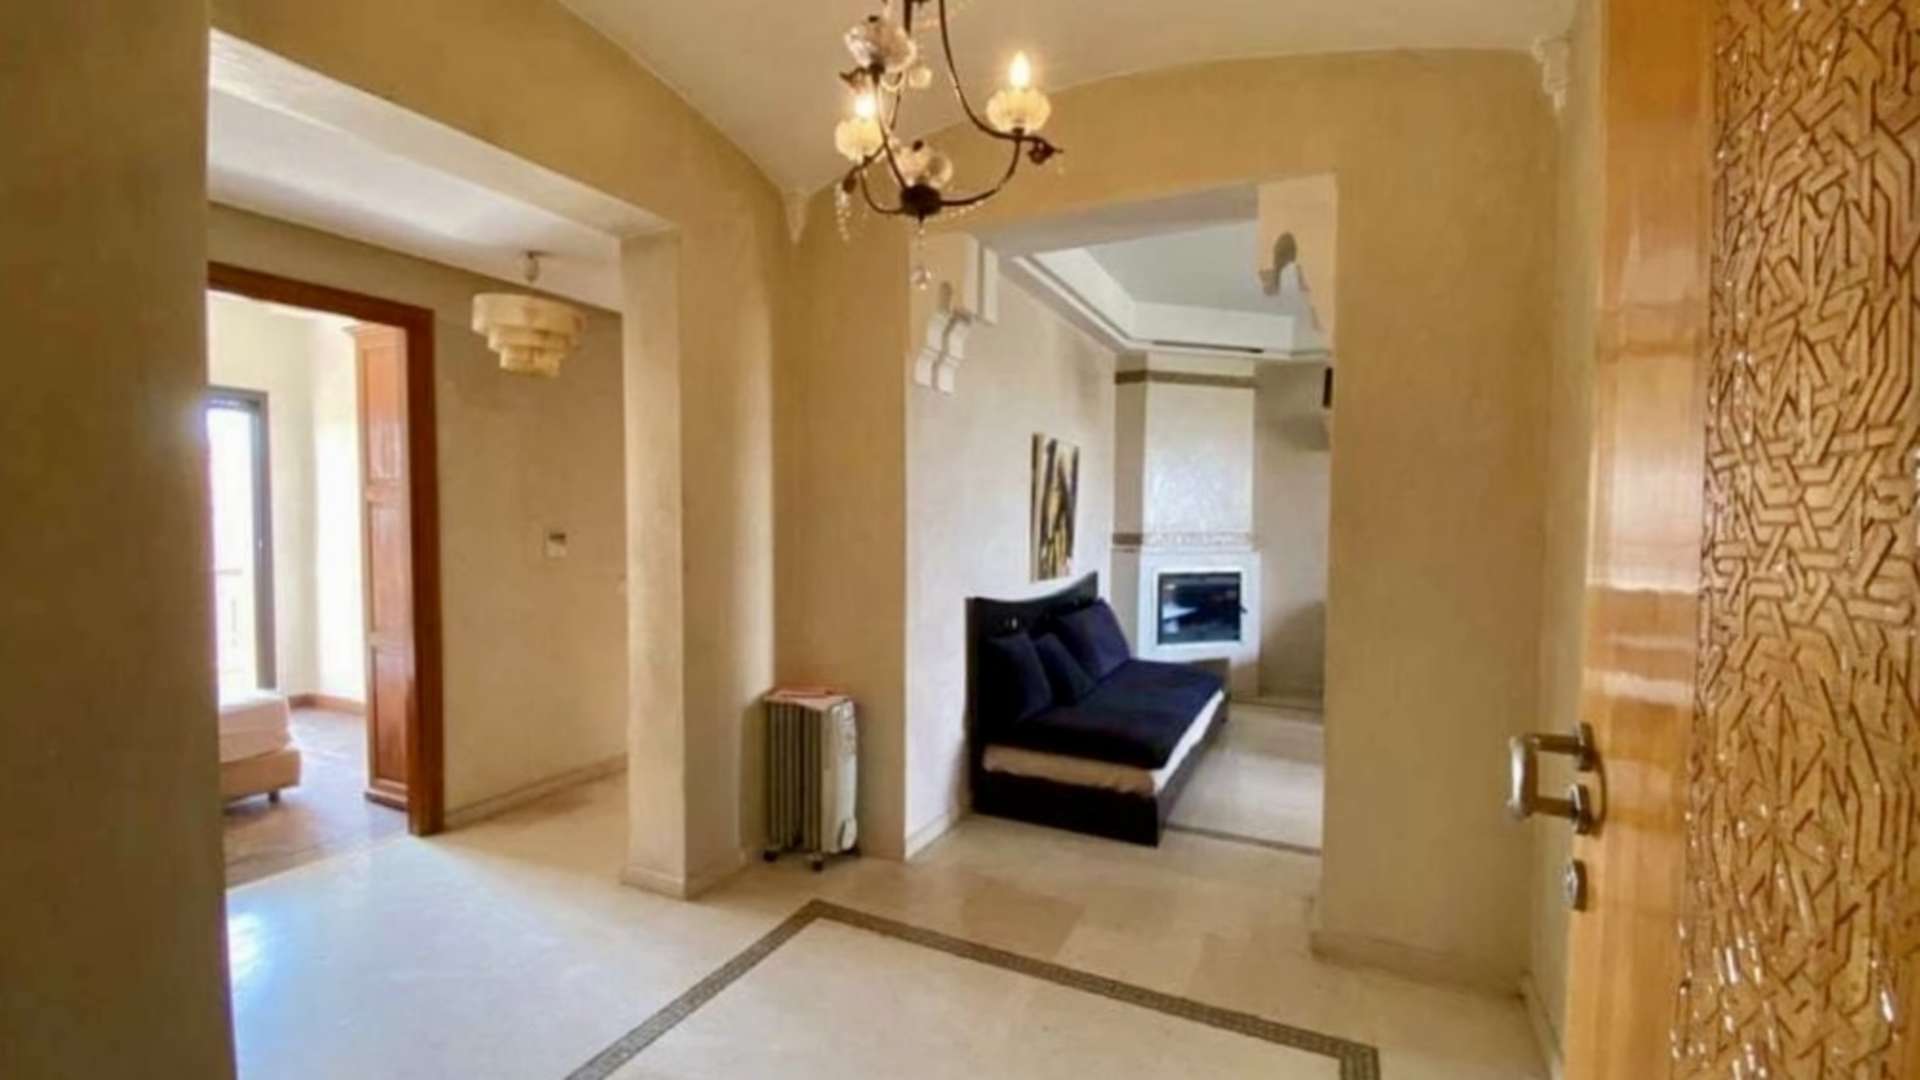 Location longue durée ,Appartement,Appartement à la location longue durée vide avec vue dégagée au dernier étage avec une jolie terrasse,Marrakech,Camp Al Ghoul